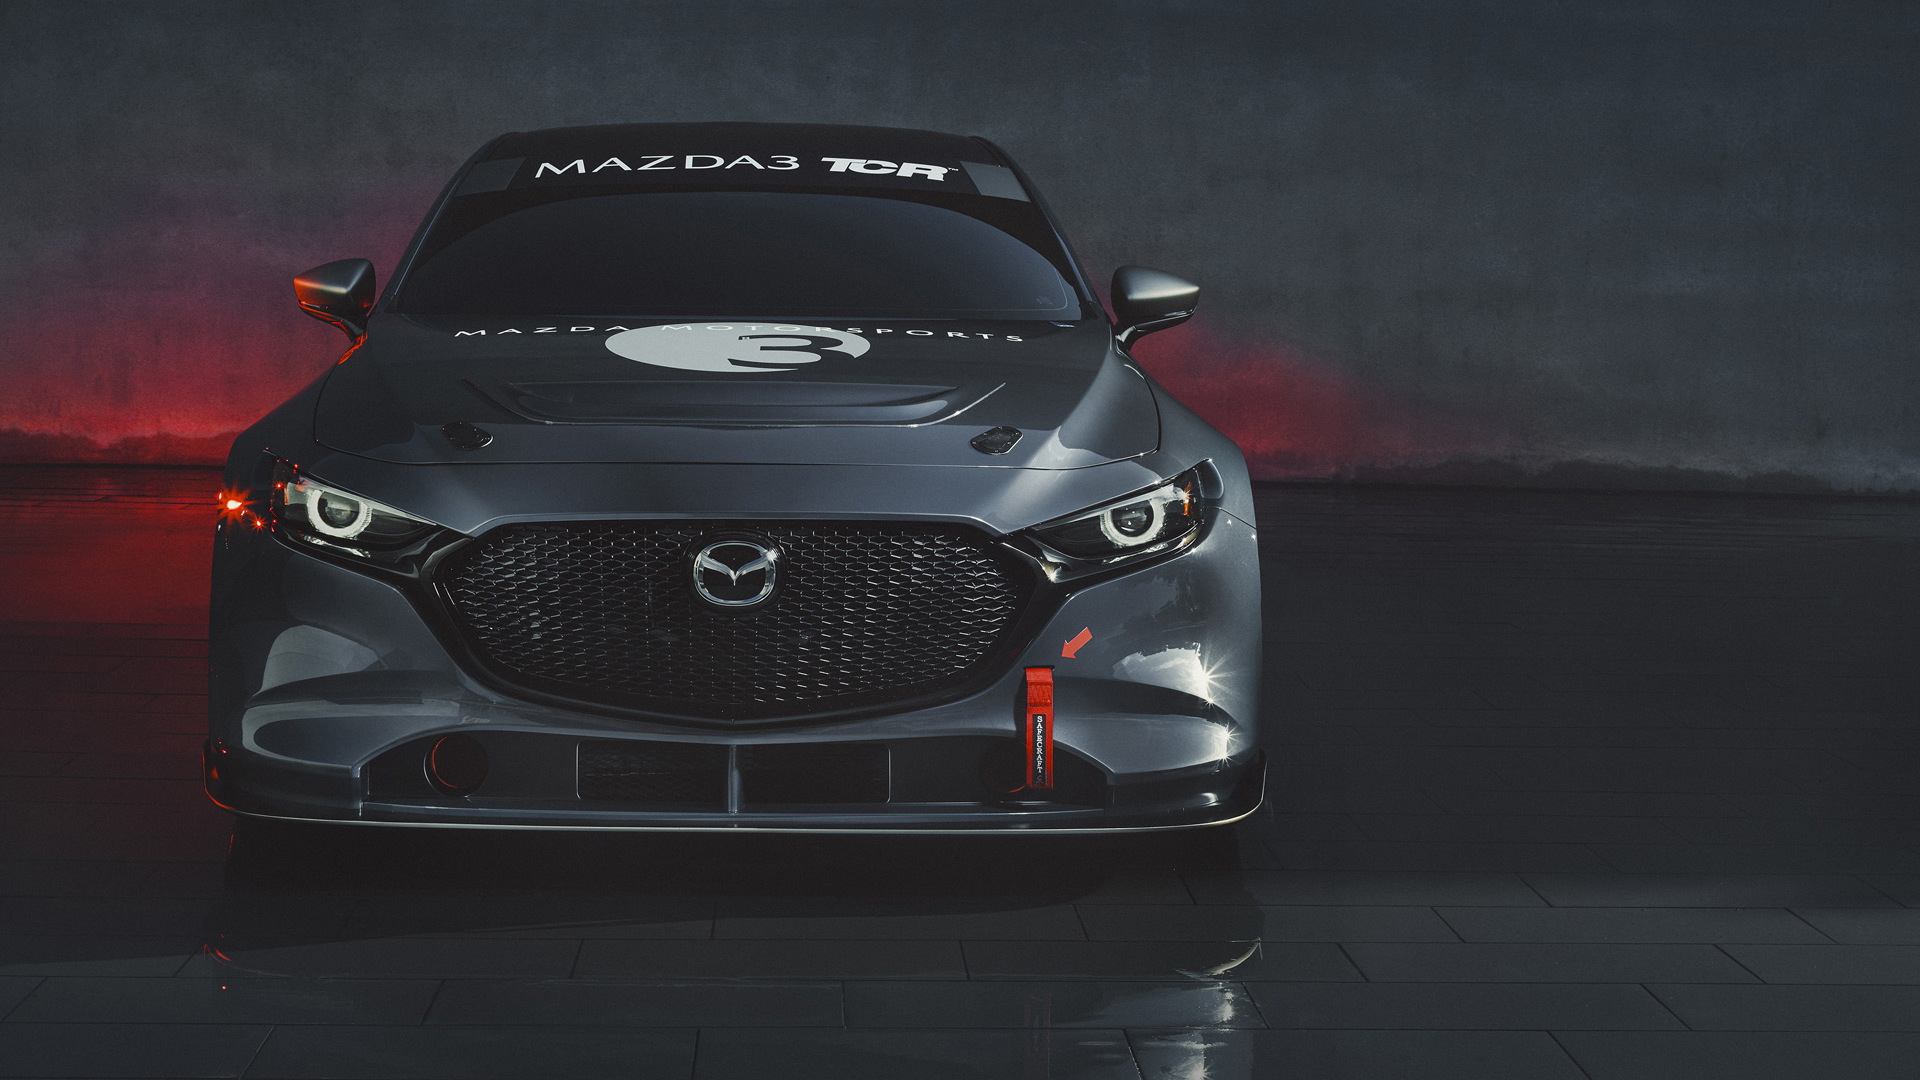 2020 Mazda 3 TCR race car